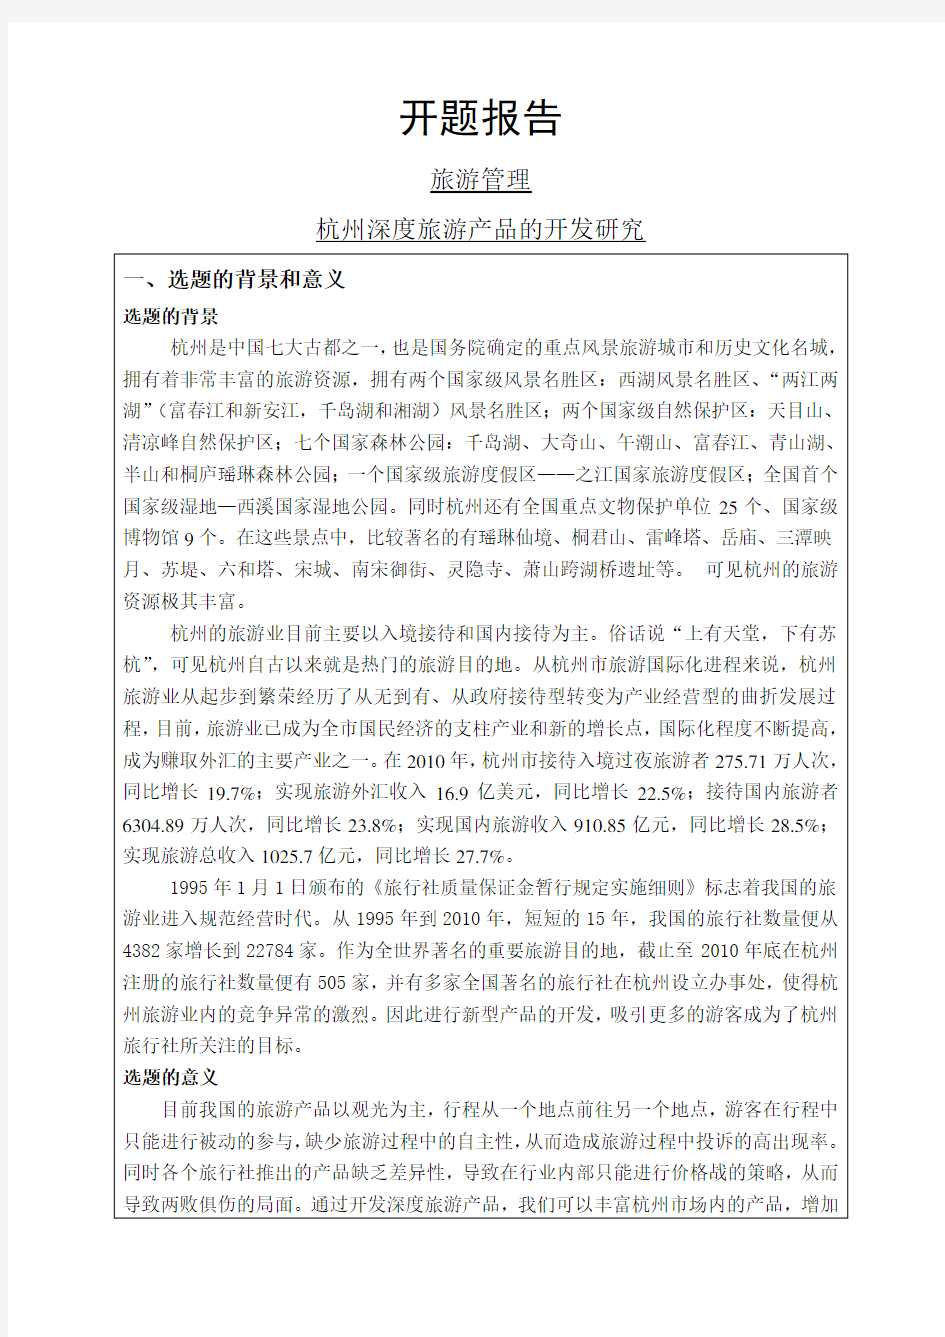 杭州深度旅游产品的开发研究开题报告